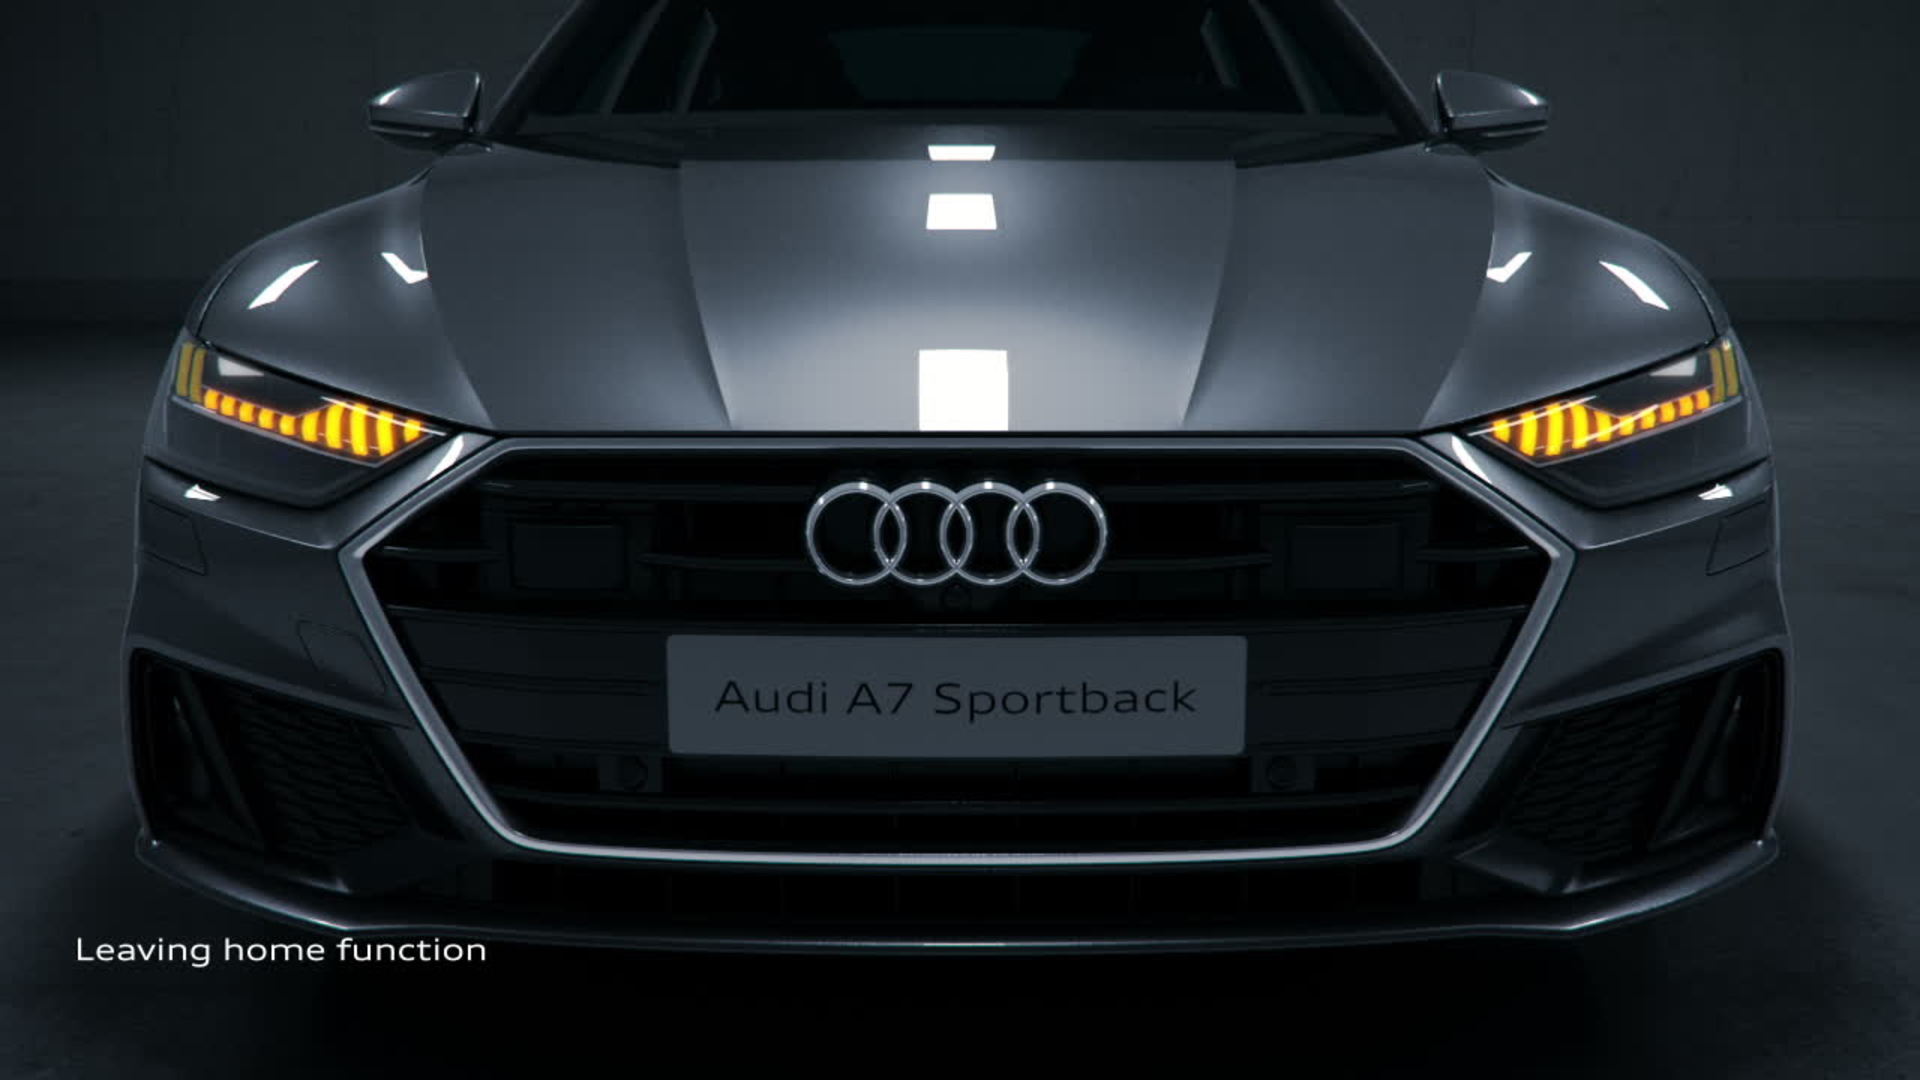 Audi A7 Laser Lights - 1920x1080 Wallpaper 